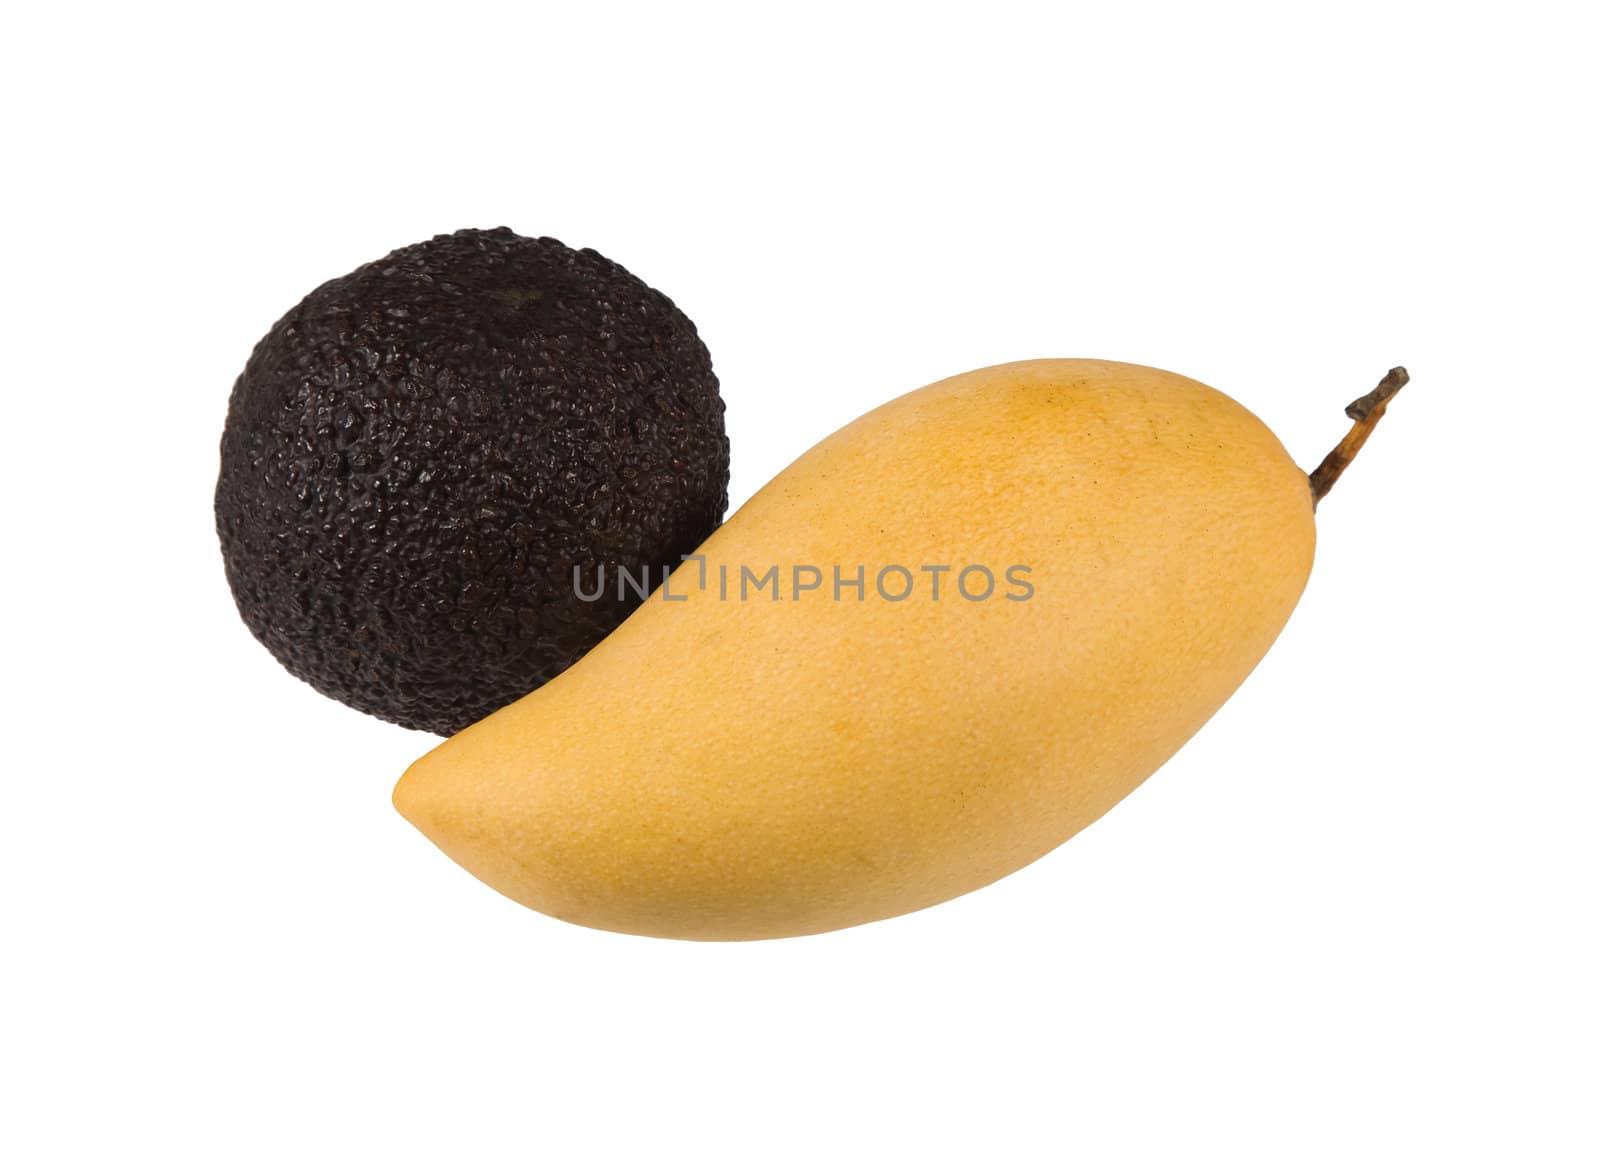 Avocado and mango closeup, isolated on white background